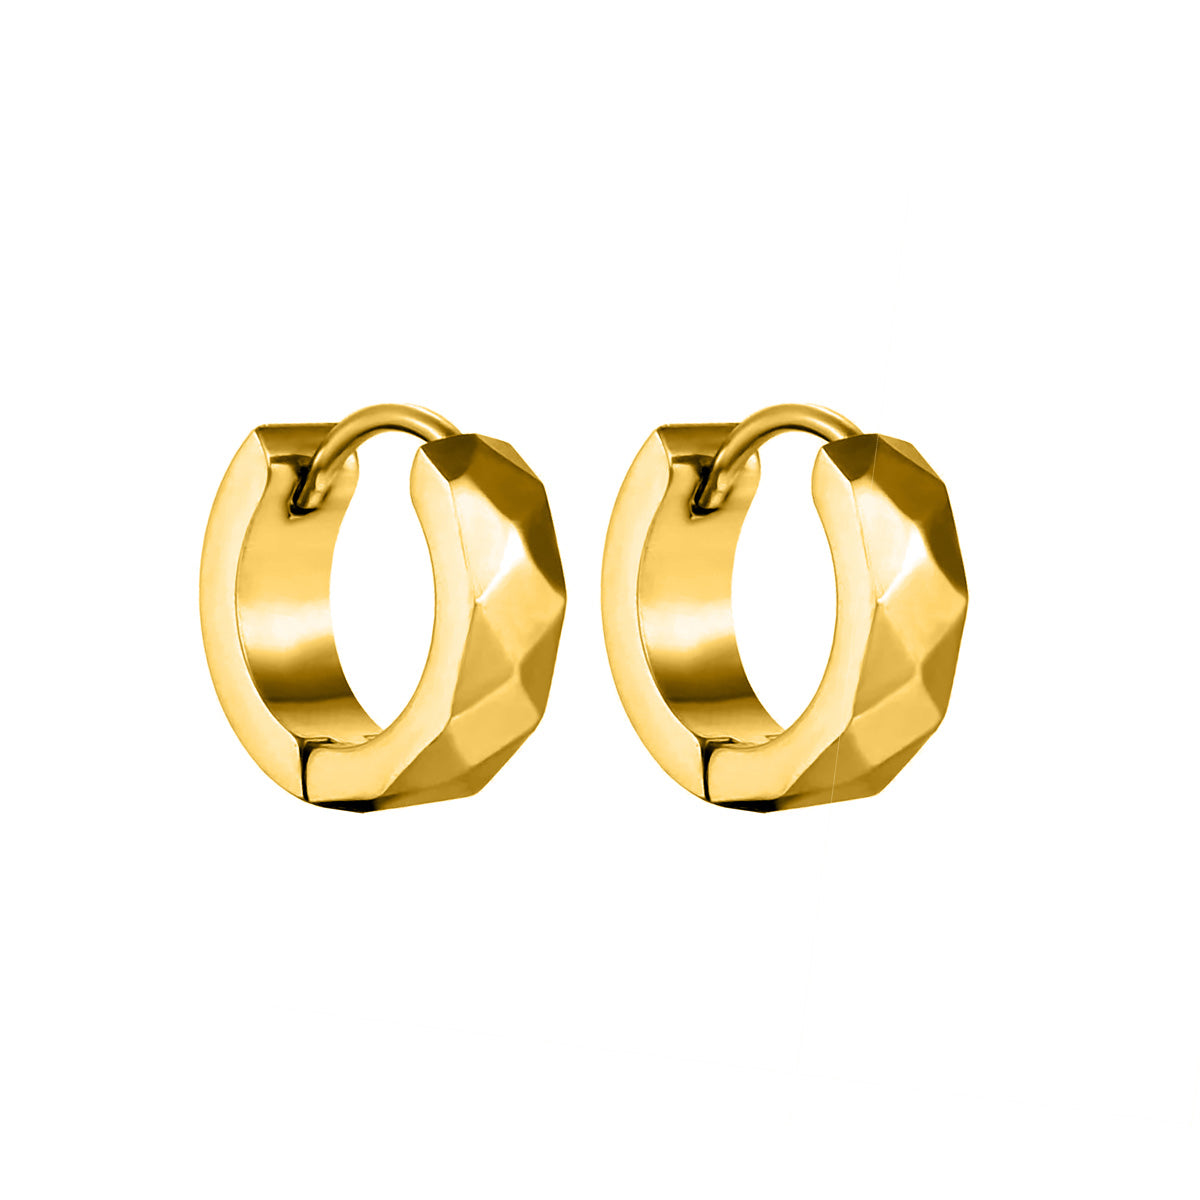 Bevelled steel ring earring 4mm (Steel 316L)